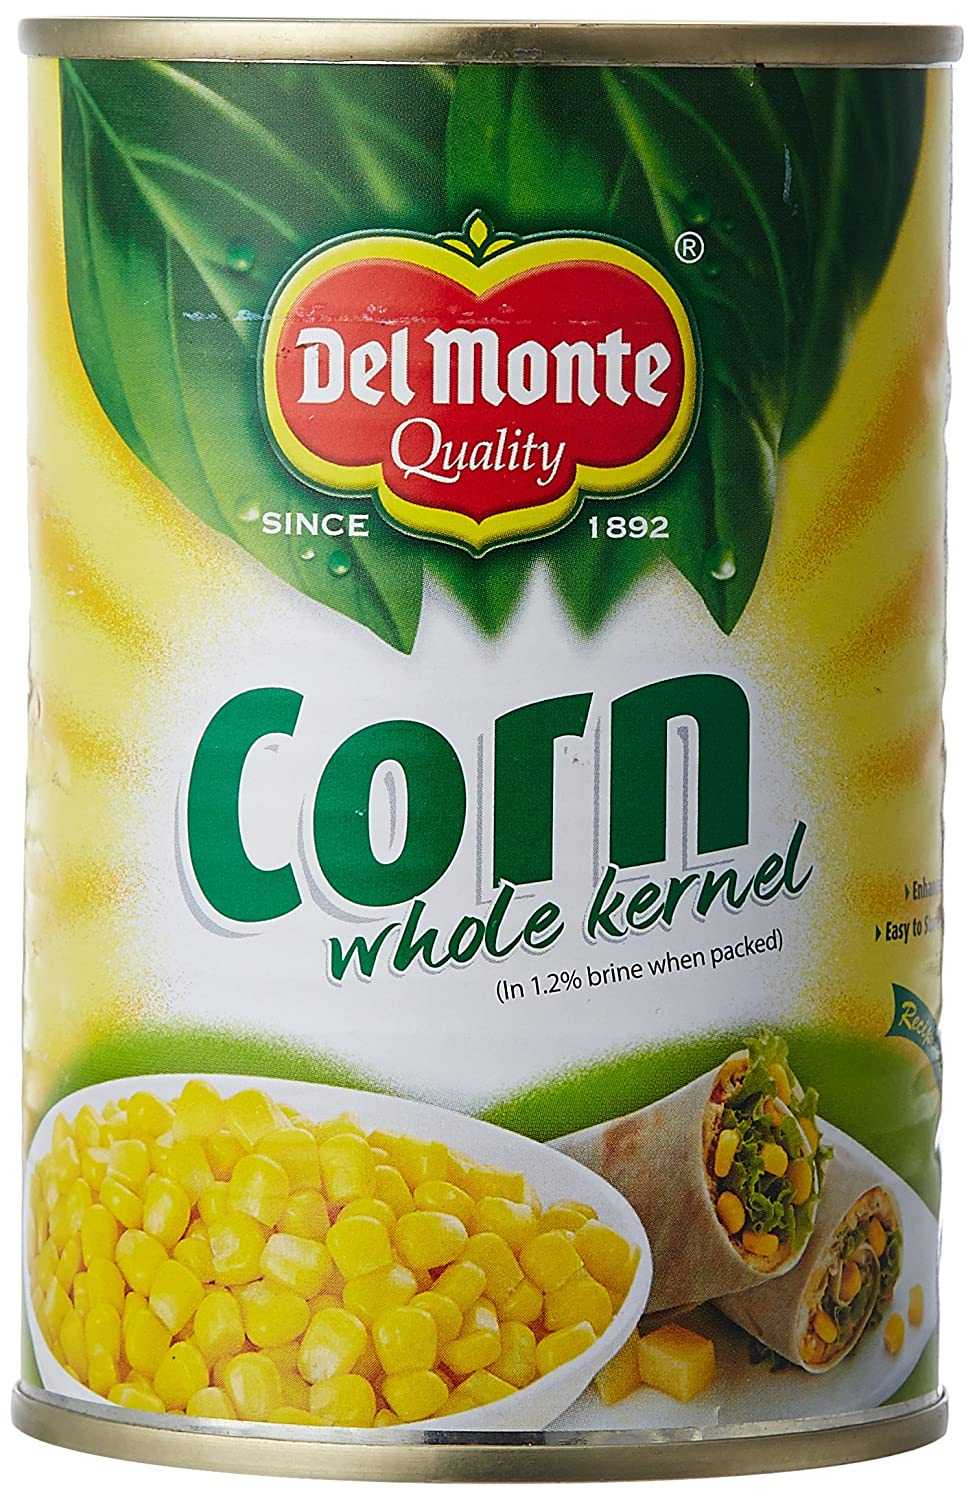 Del Monte Whole Sweet Corn Kernels |420 gm